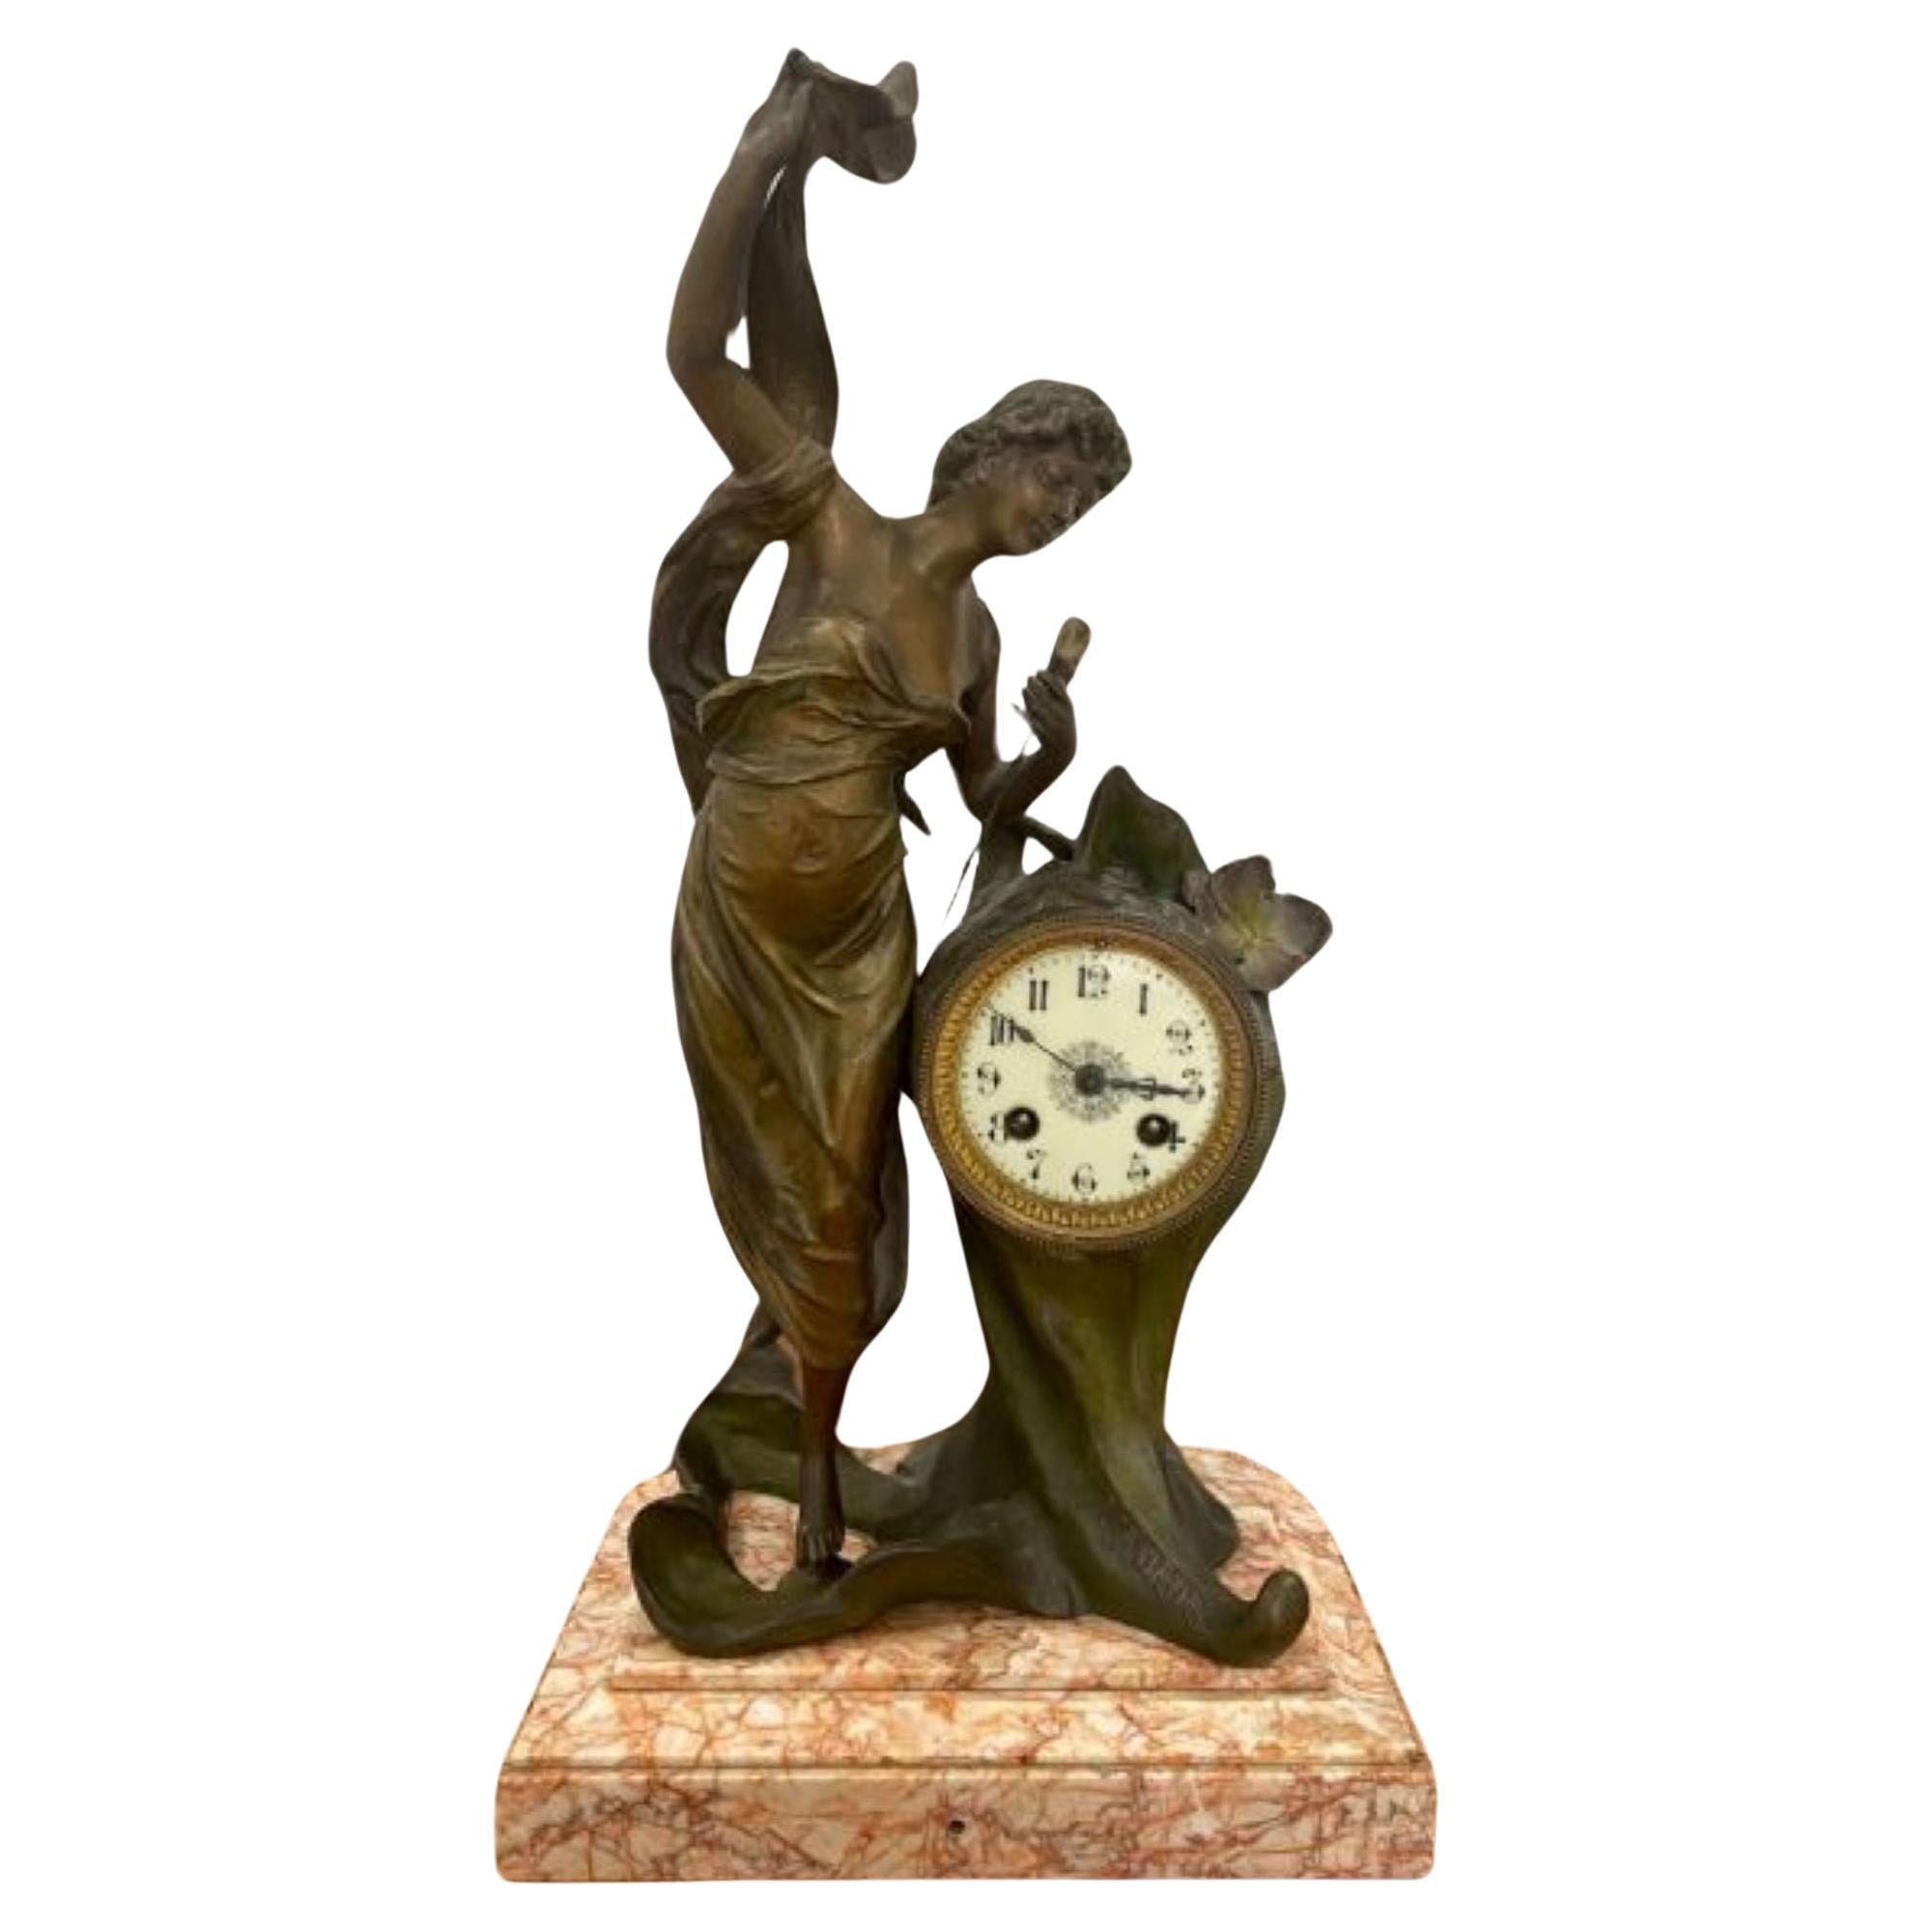 Quality Antique Art Nouveau French L'AURORE mantle clock